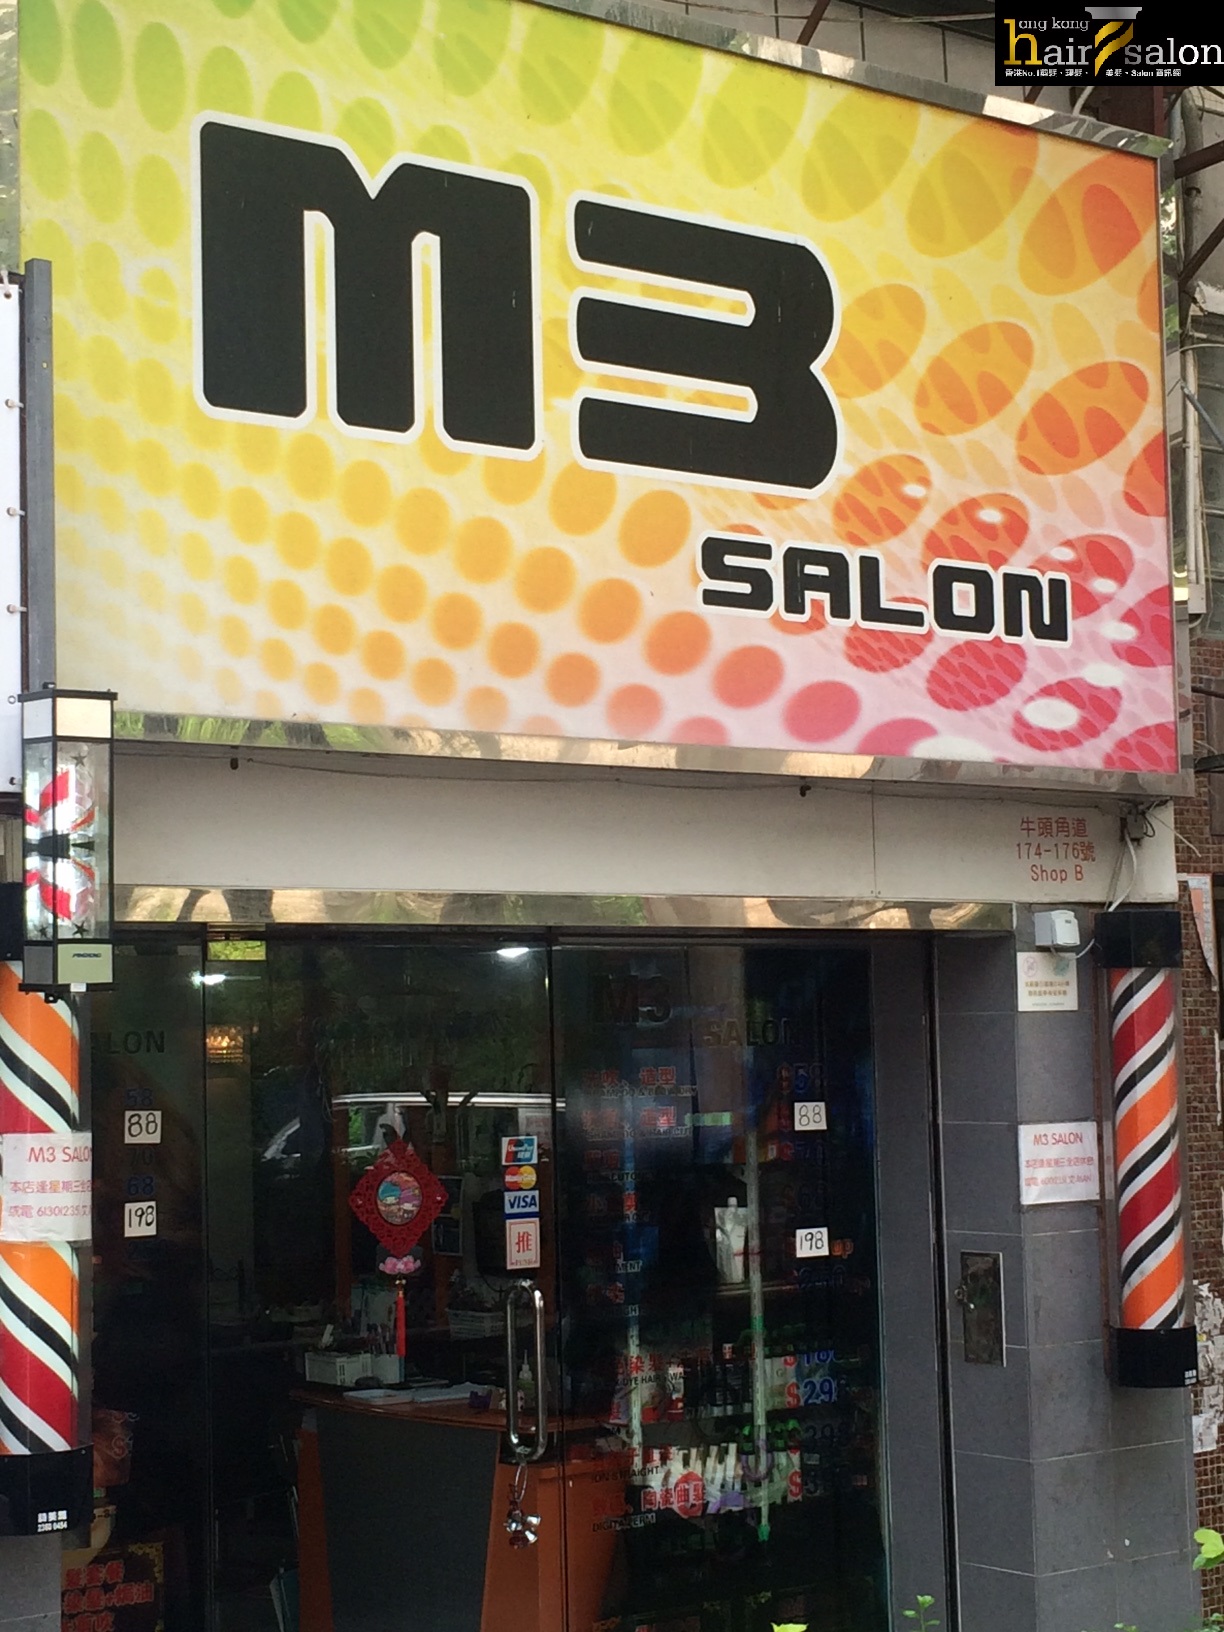 髮型屋 Salon: M3 SALON